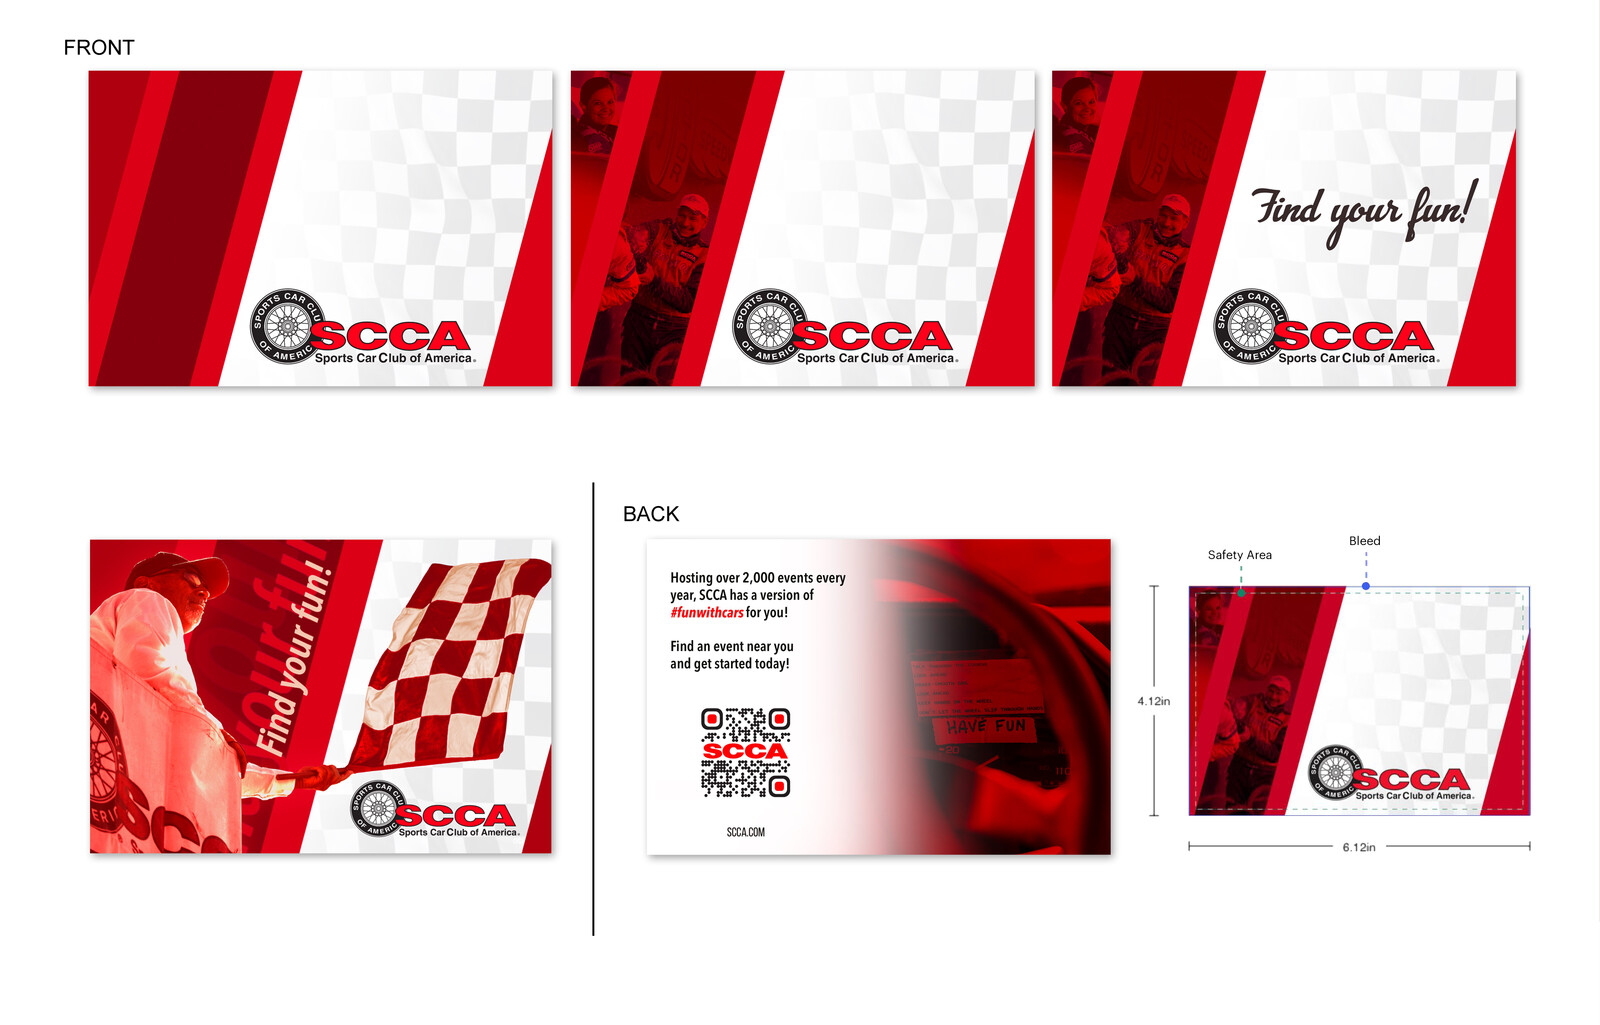 SCCA Postcards / Ad Campaign